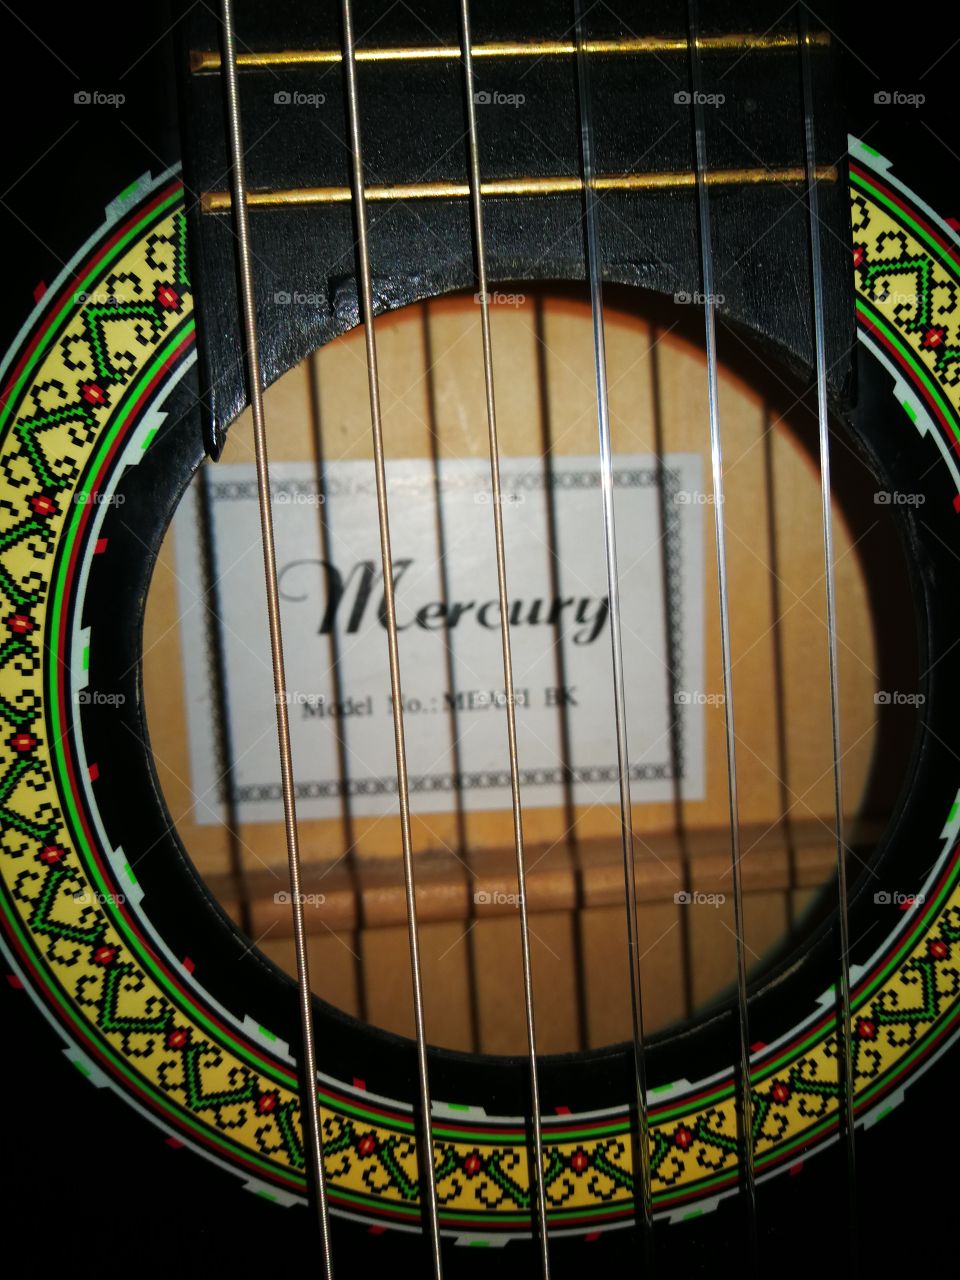 marca de guitarra mercury